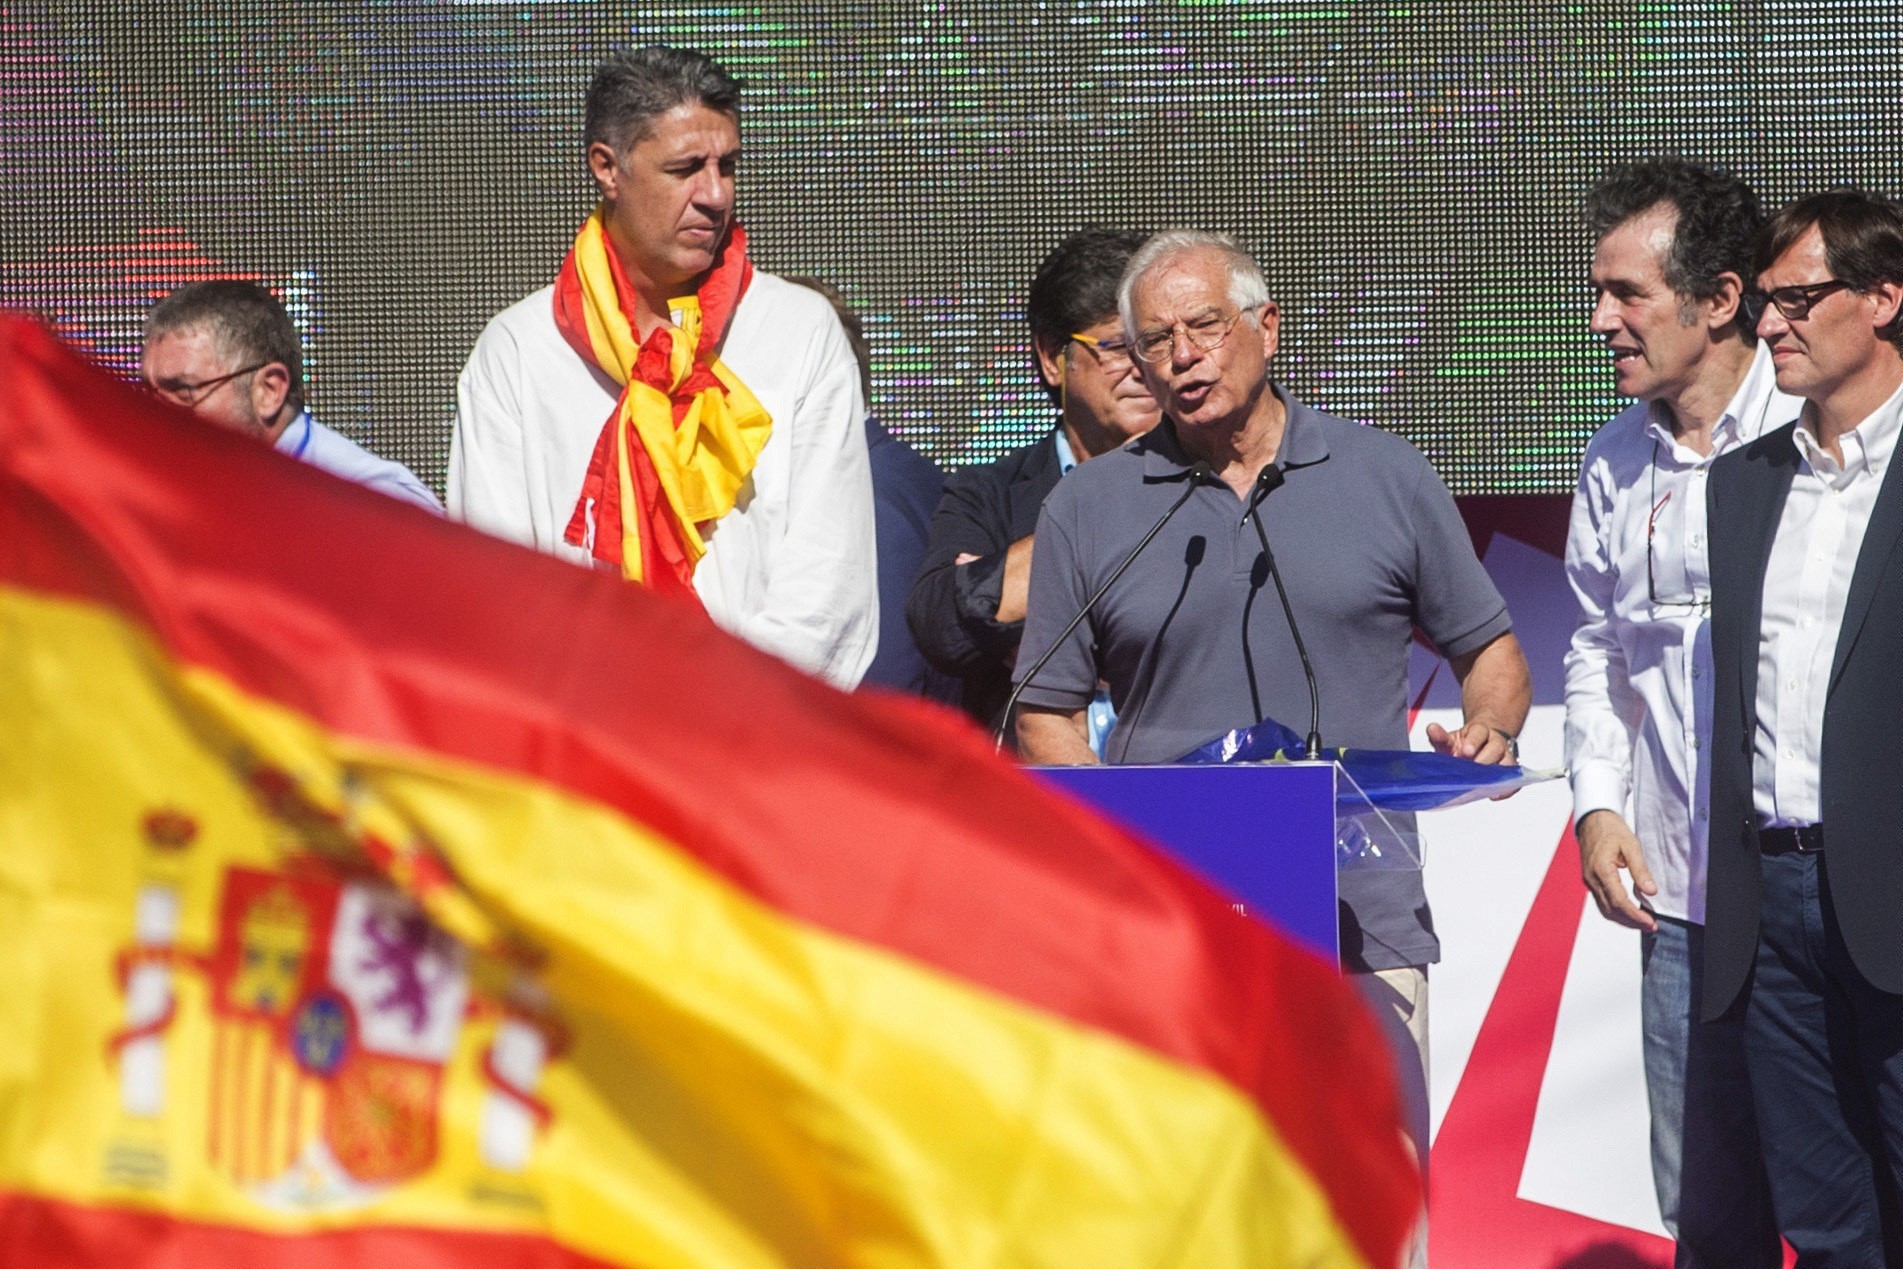 El discurso del Rey, dos manifestaciones diferentes y el futuro de España